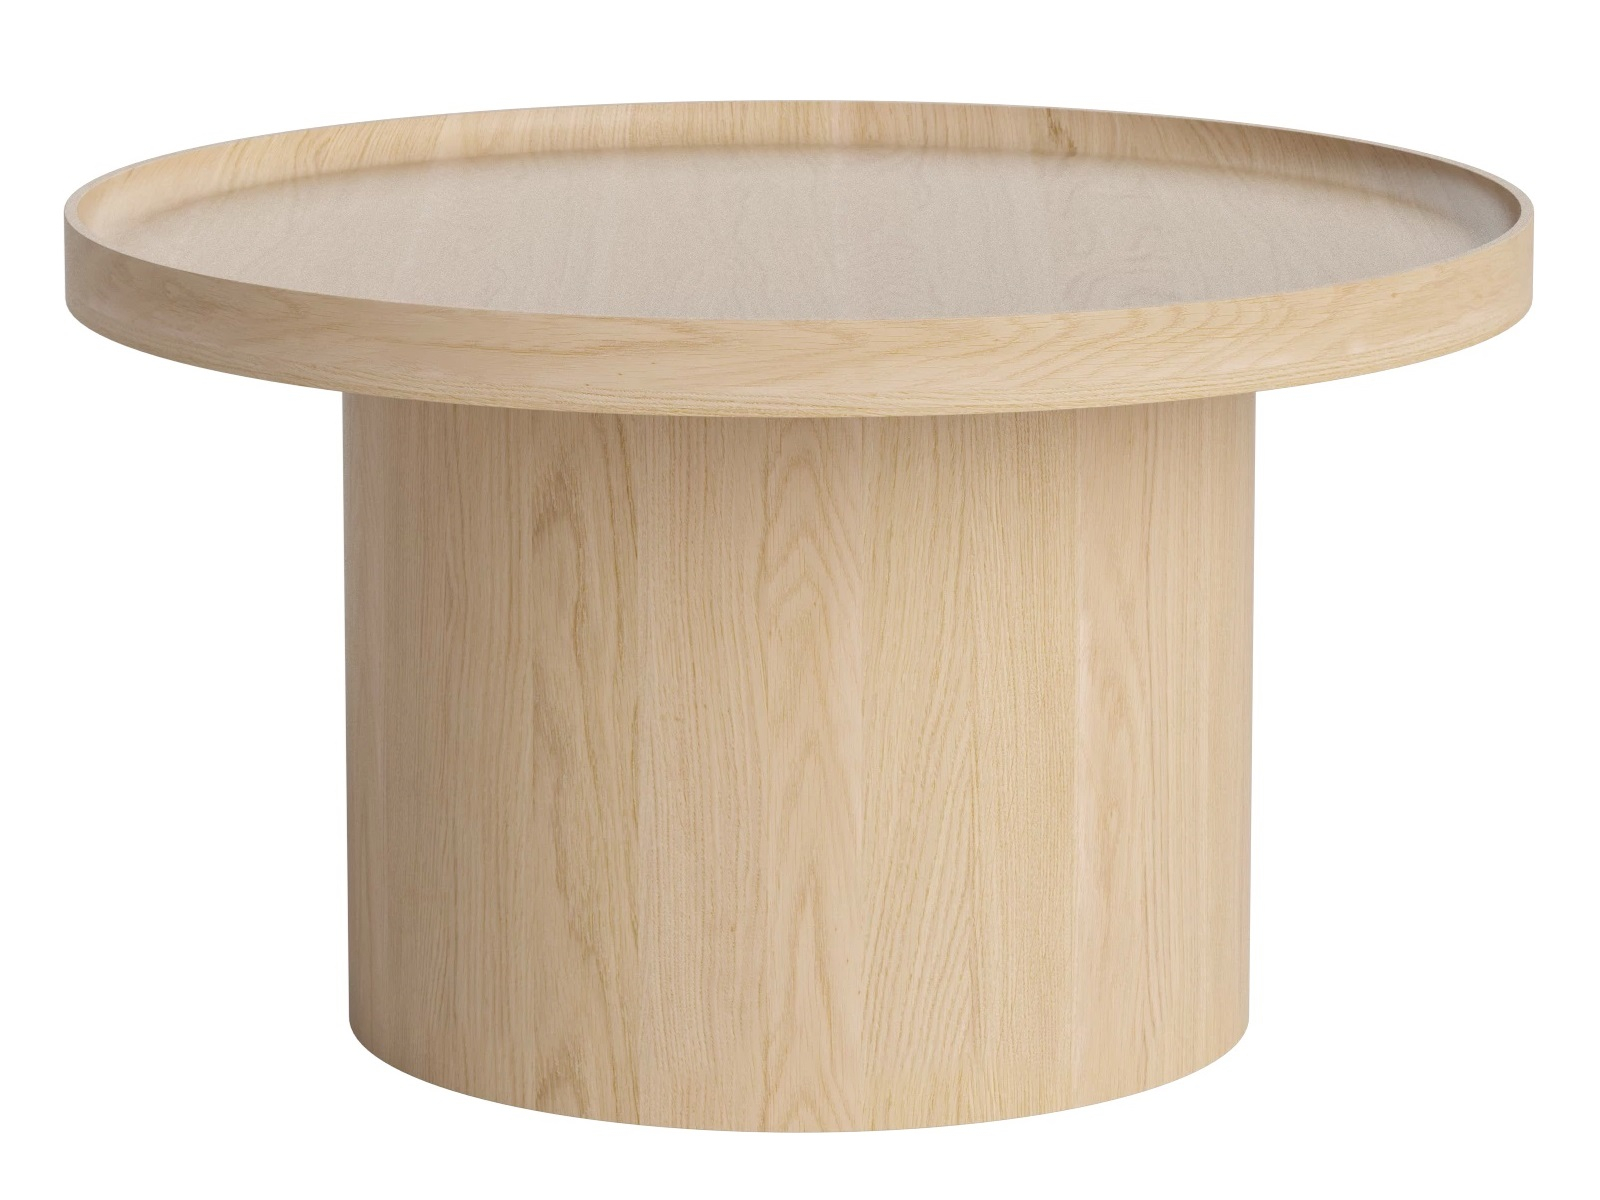 Bolia designové konferenční stoly Plateau Coffee Table Large (průměr 74 cm)